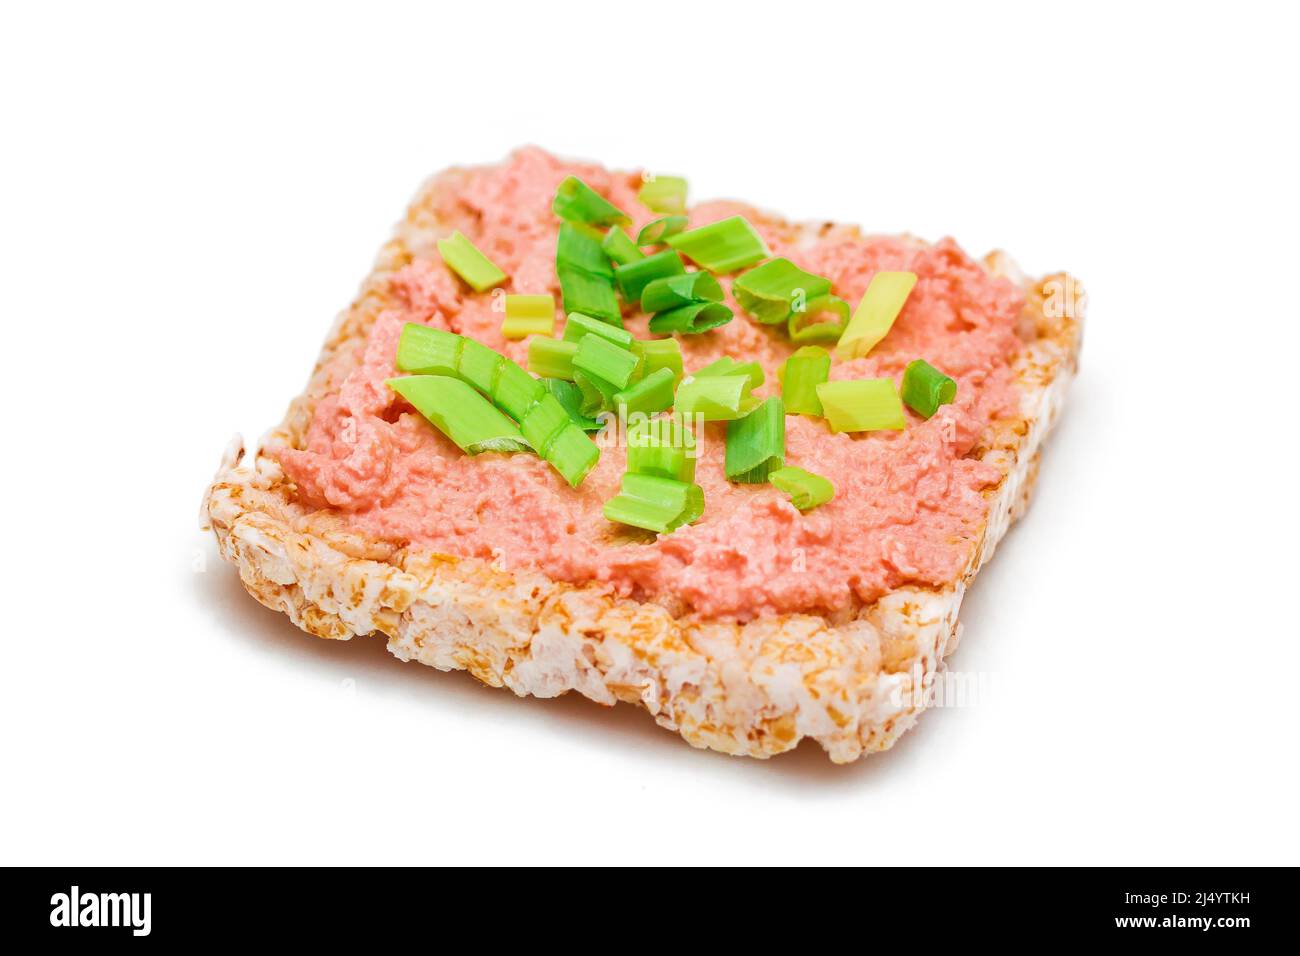 Reiskuchen-Sandwich mit Fischcreme und grünen Zwiebeln - isoliert auf Weiß. Einfaches Frühstück. Diät-Essen. Schnelle und gesunde Sandwiches. Knäckebrot mit leckerer Füllung. Gesunde Ernährung Snack - Isolation Stockfoto